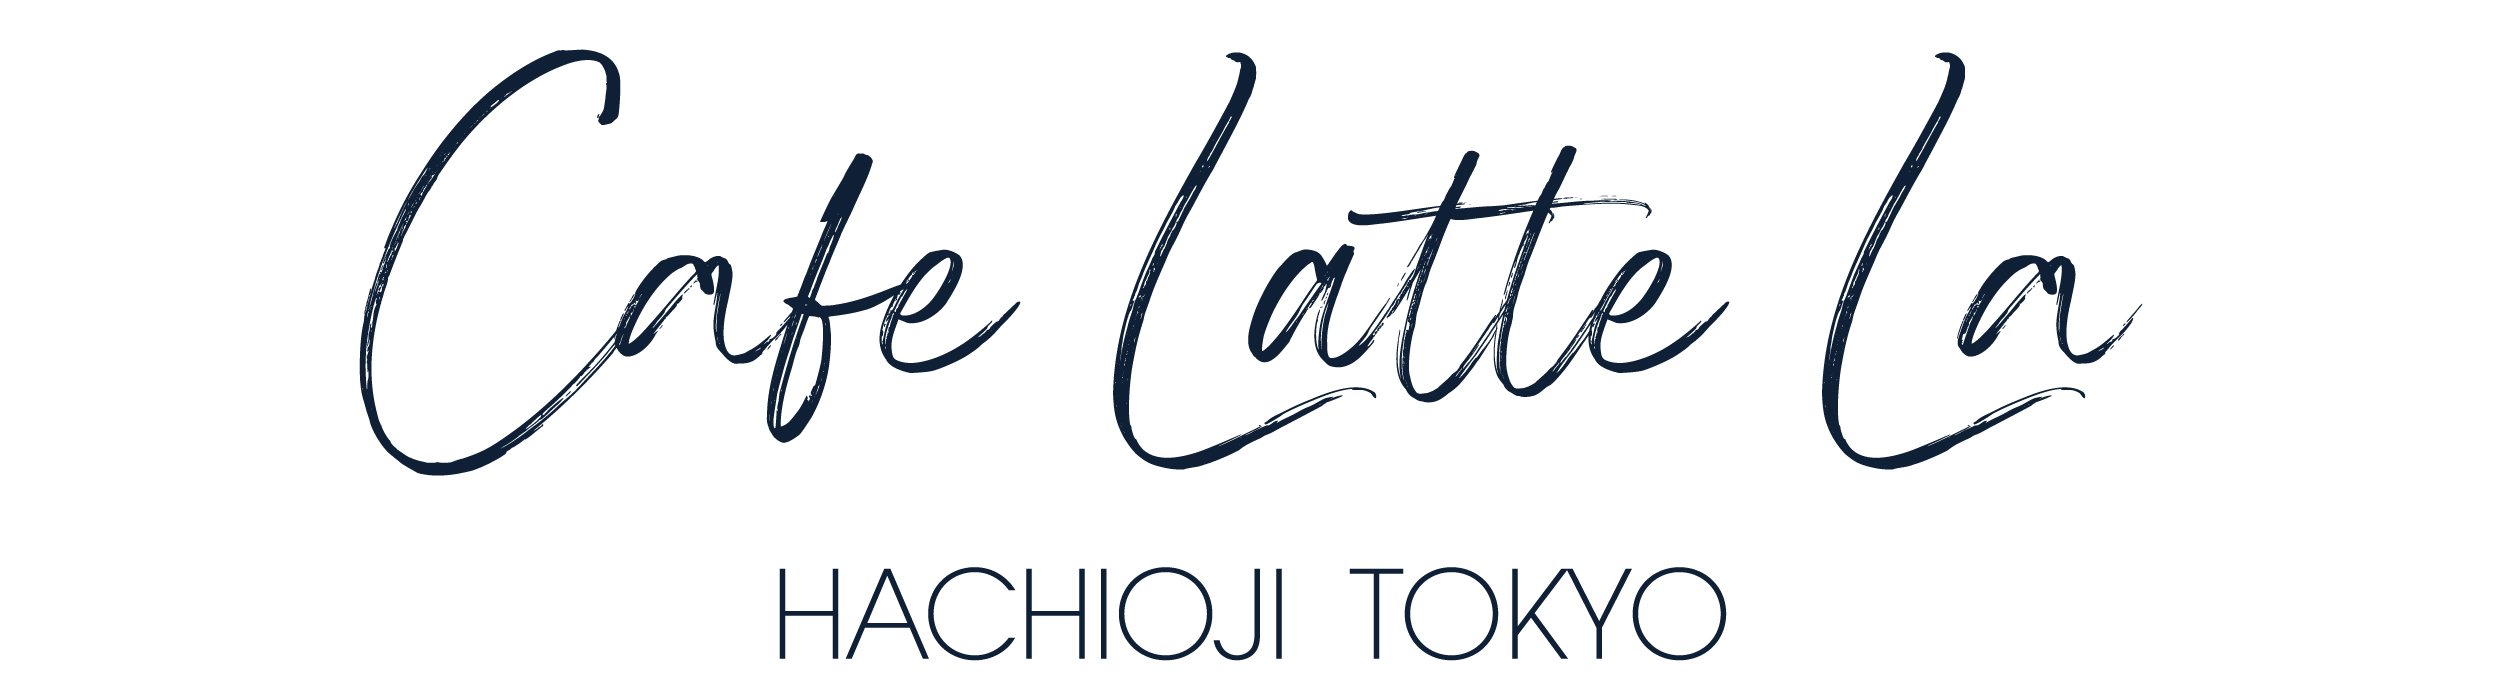 八王子 カフェ Cafe Latte La